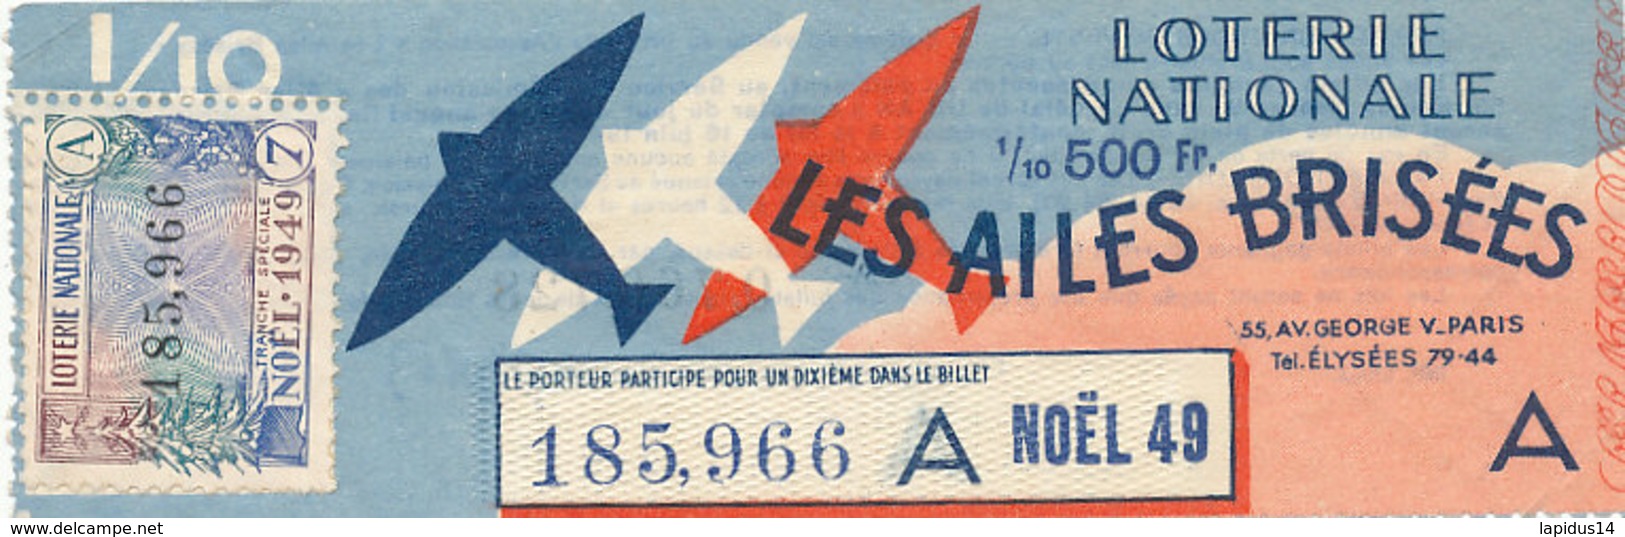 BL 103 / BILLET  LOTERIE NATIONALE   LES AILES BRISEES  NOEL  1949 - Billets De Loterie